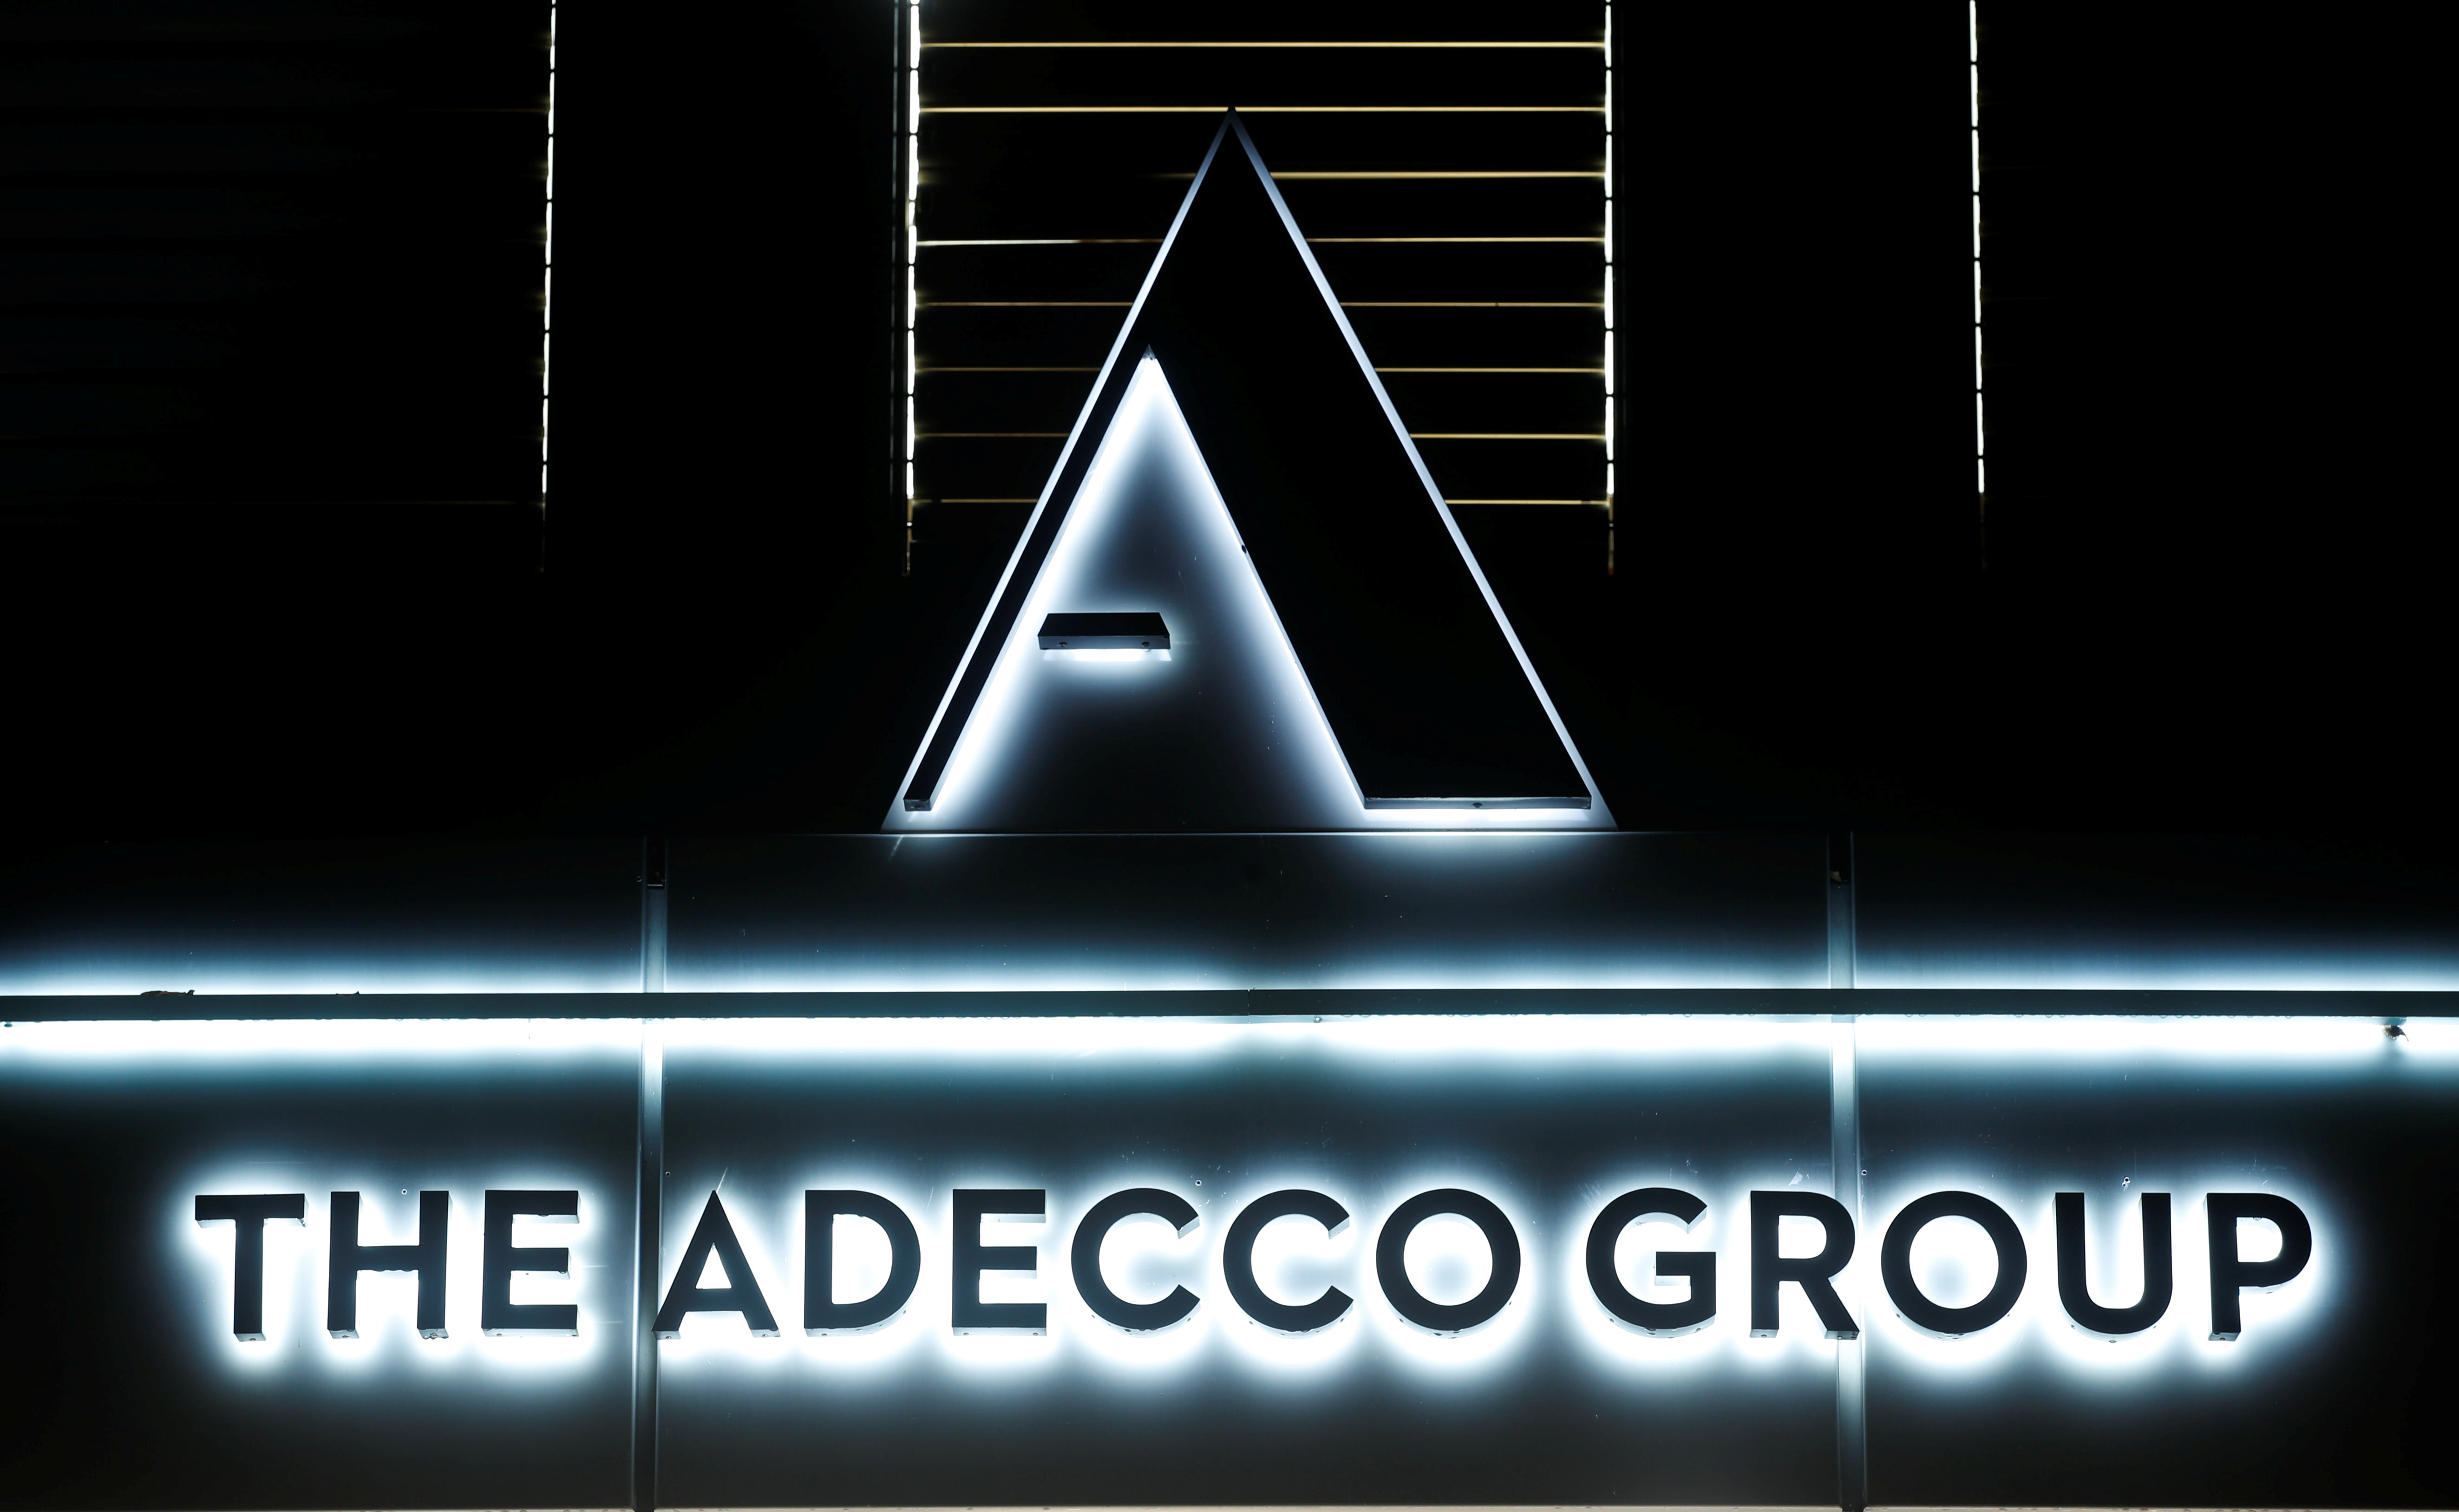 Adecco poursuit sa croissance externe et rachète QAPA pour 65 millions d'euros